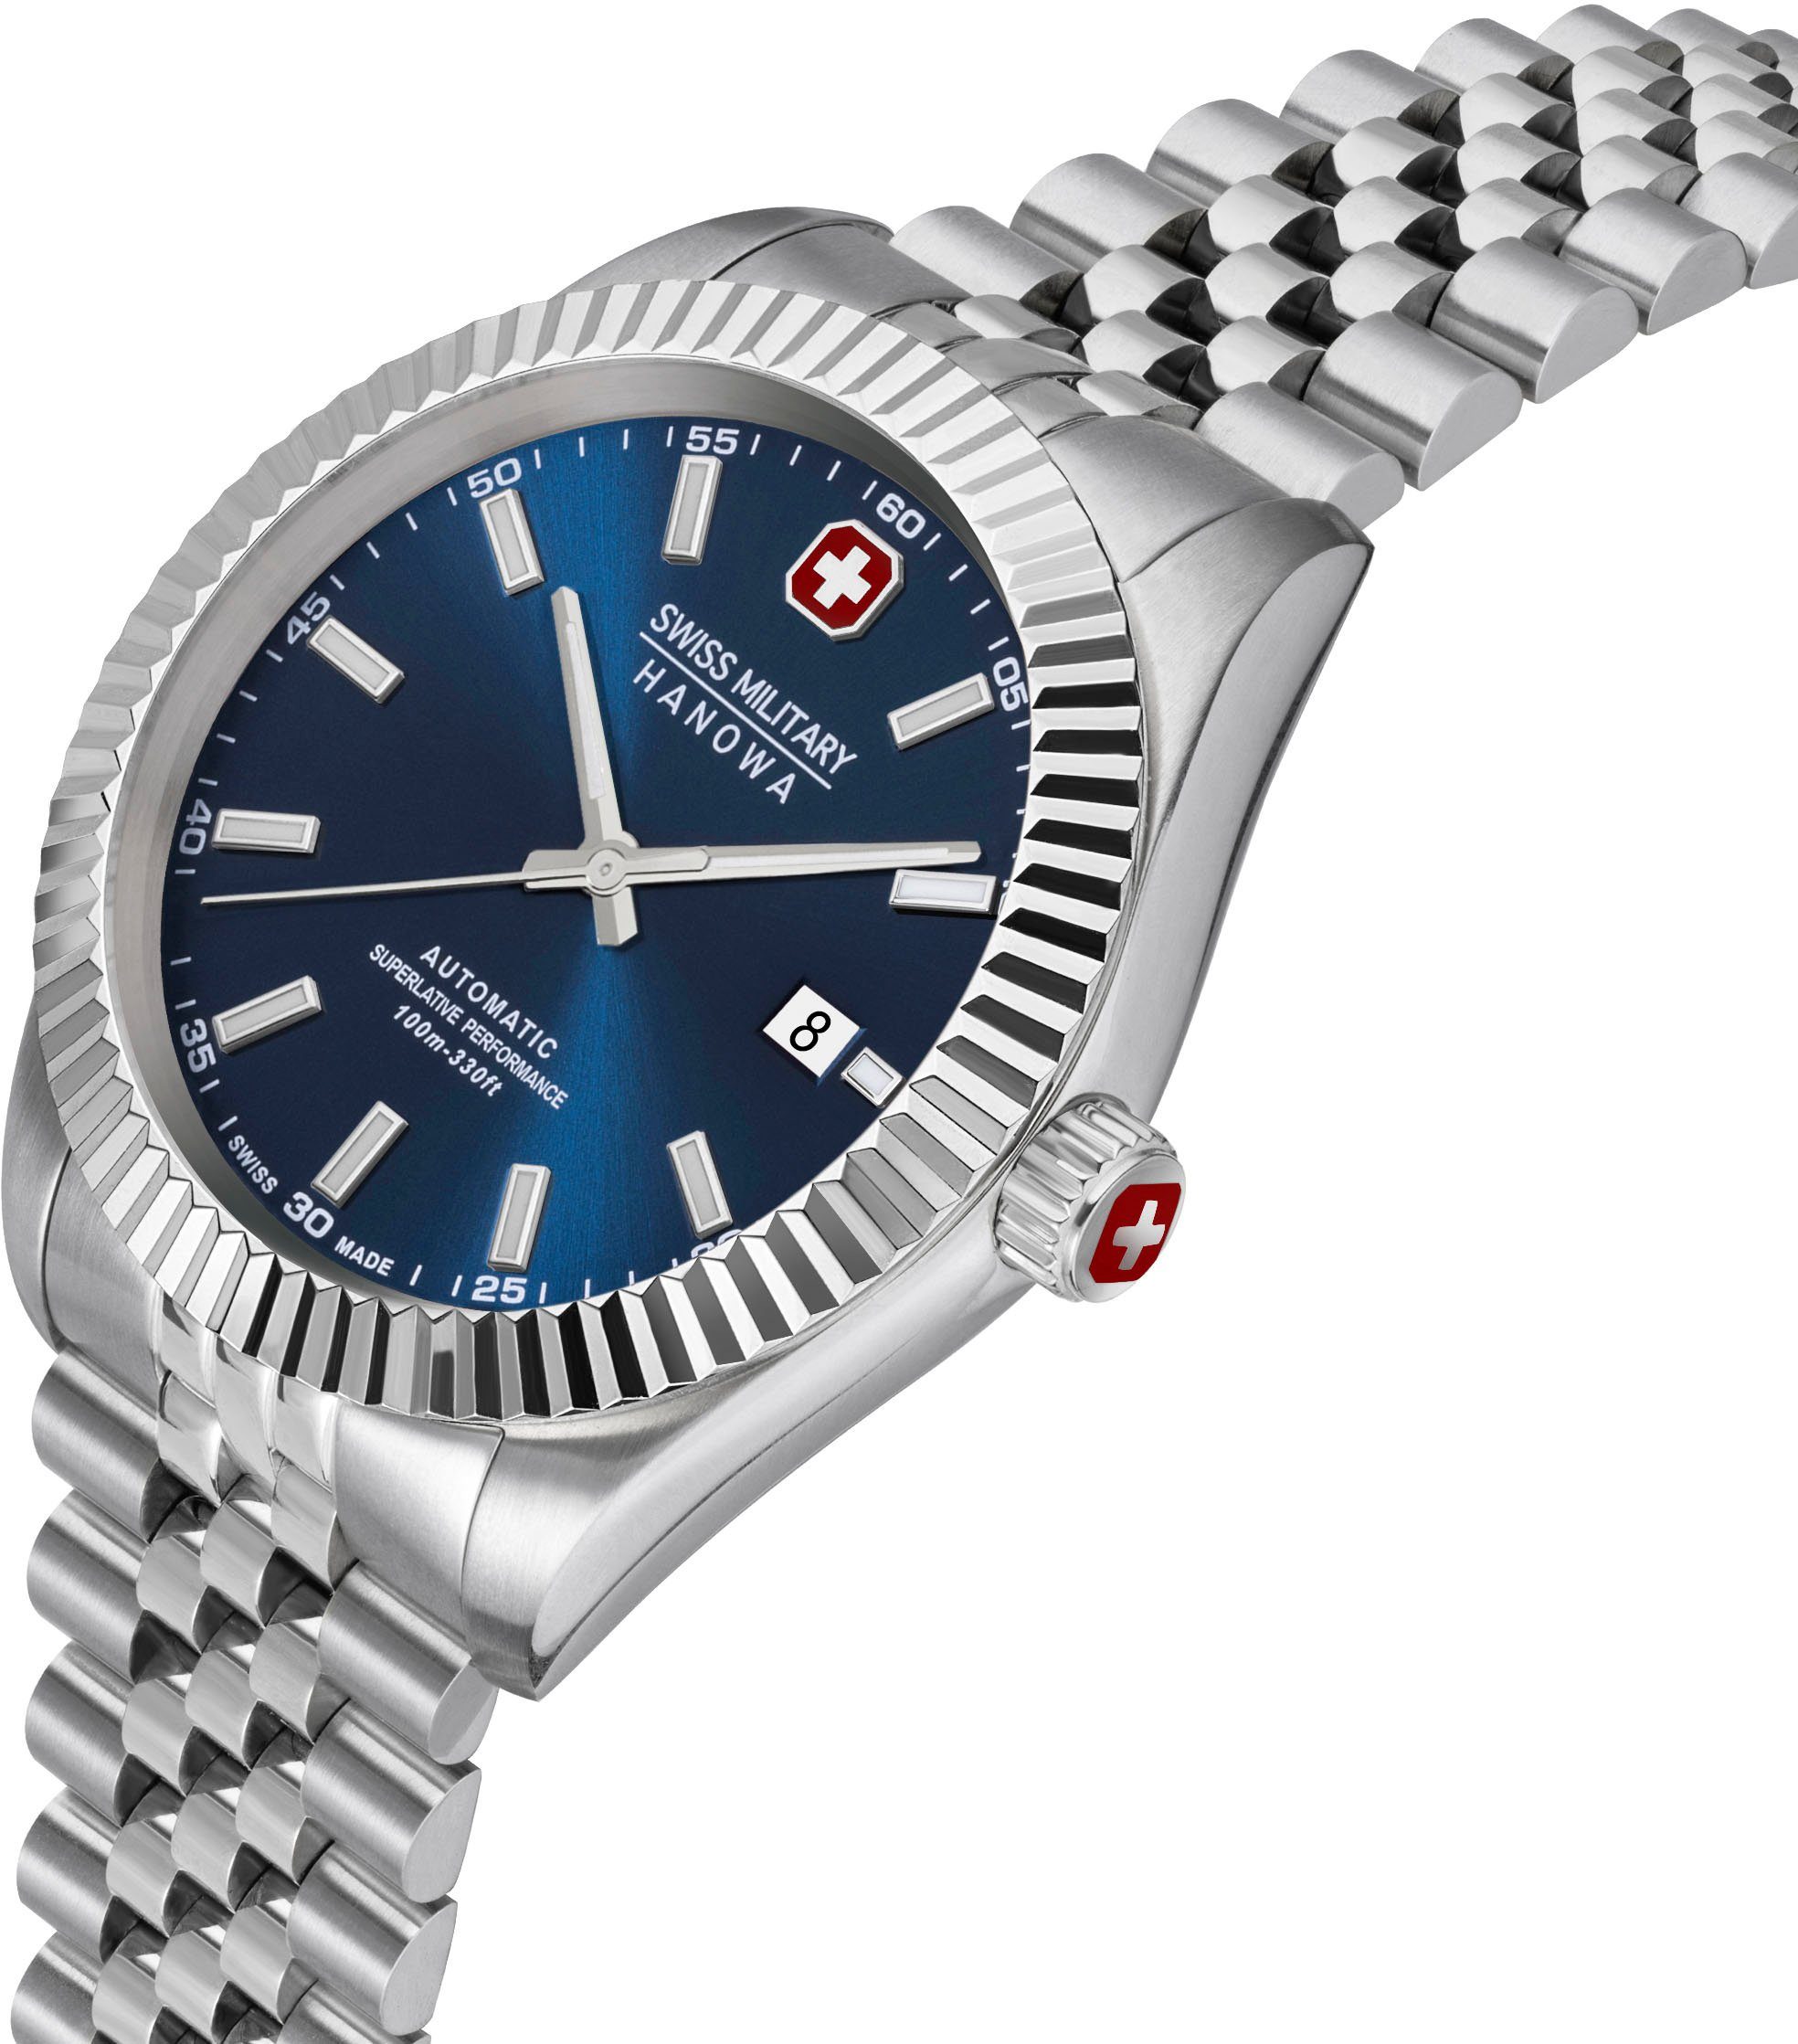 Swiss Schweizer Uhr SMWGL0002102 Blau Hanowa AUTOMATIC DILIGENTER, Military